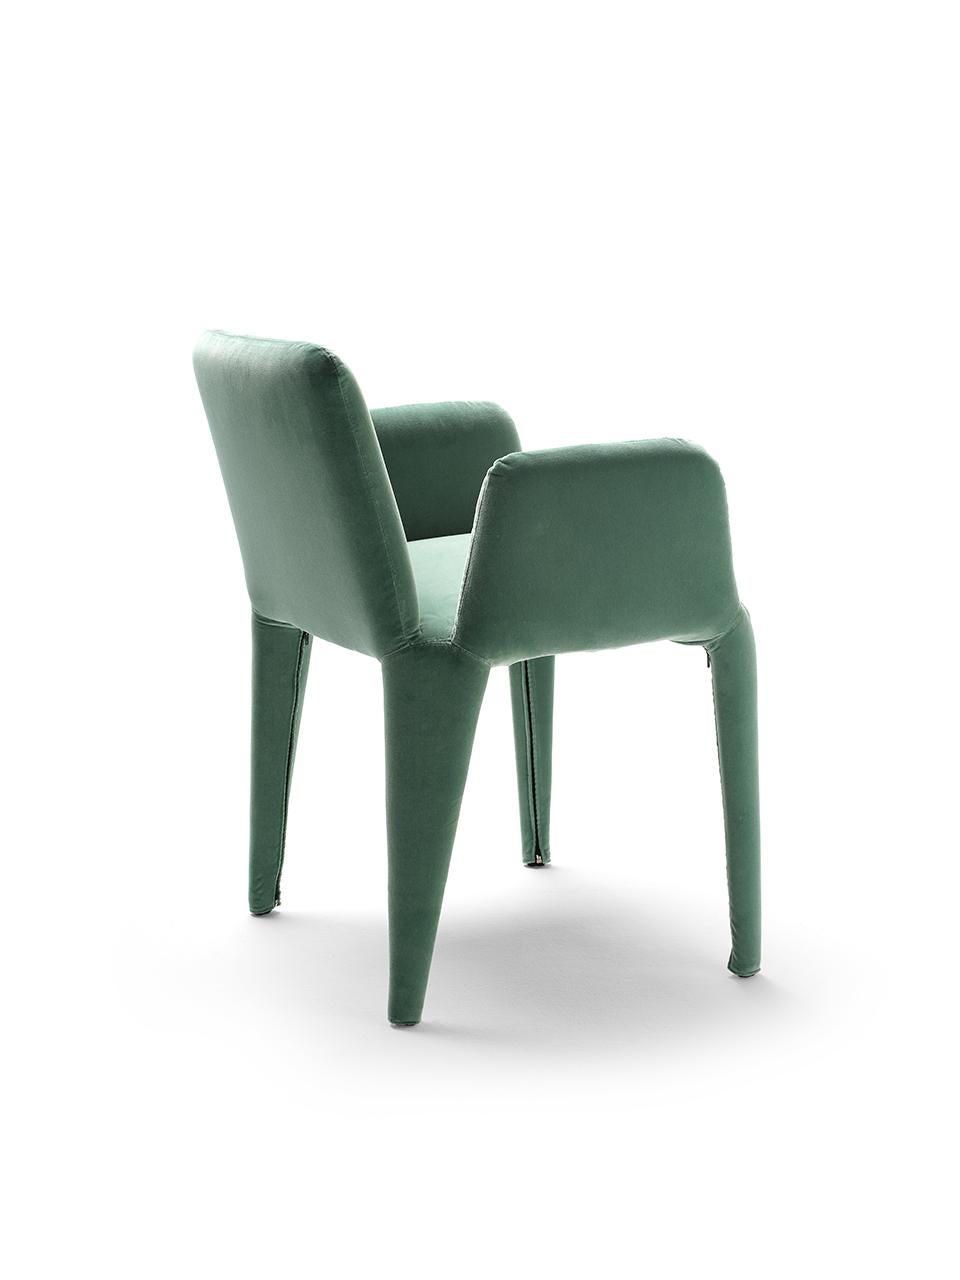 Der kleine Sessel Nova ist das jüngste Mitglied der gleichnamigen Produktfamilie. Es handelt sich um einen leichten Textilsessel mit edler Optik und einem vollständig abnehmbaren Stoffbezug. Die innere Struktur besteht aus einem minimalen